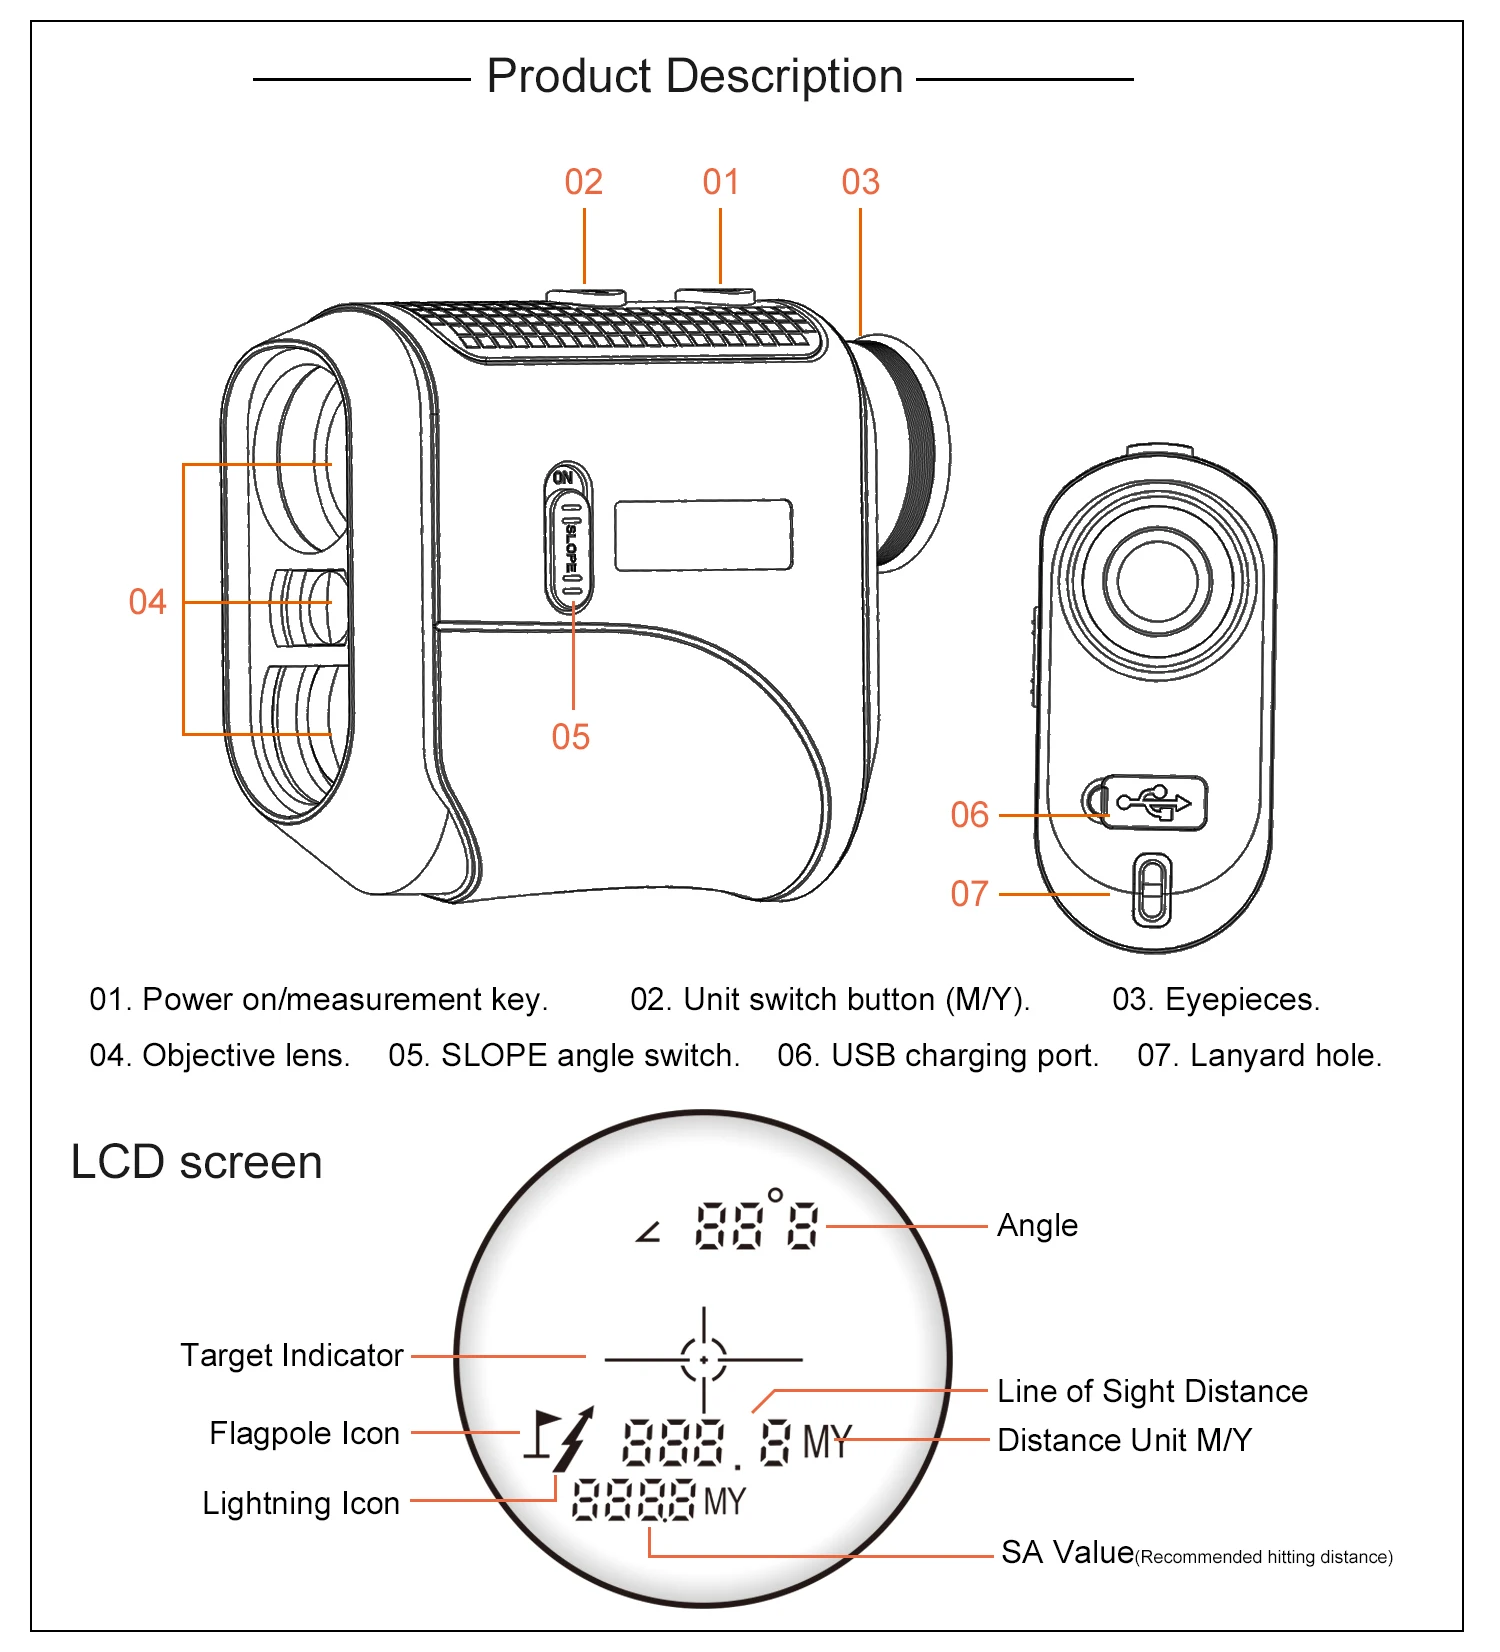 2022 Golf Laser Rangefinder with Slope adjust Flag Lock with Jolt Vibrate  Laser Range finder Distance Meter monocular Telescope|Laser Rangefinders| -  AliExpress